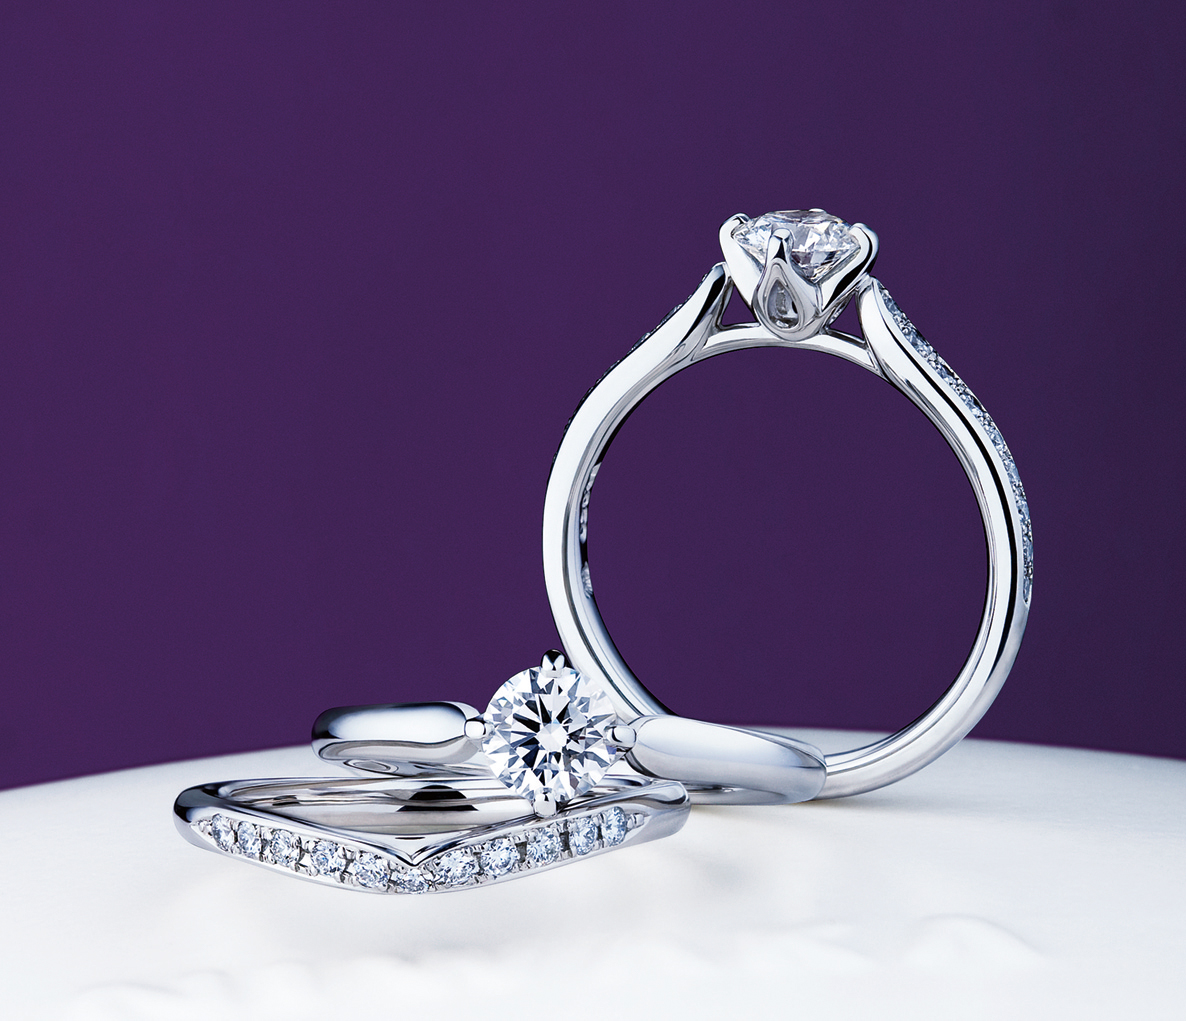 NIWAKAの婚約指輪と結婚指輪「睡蓮」